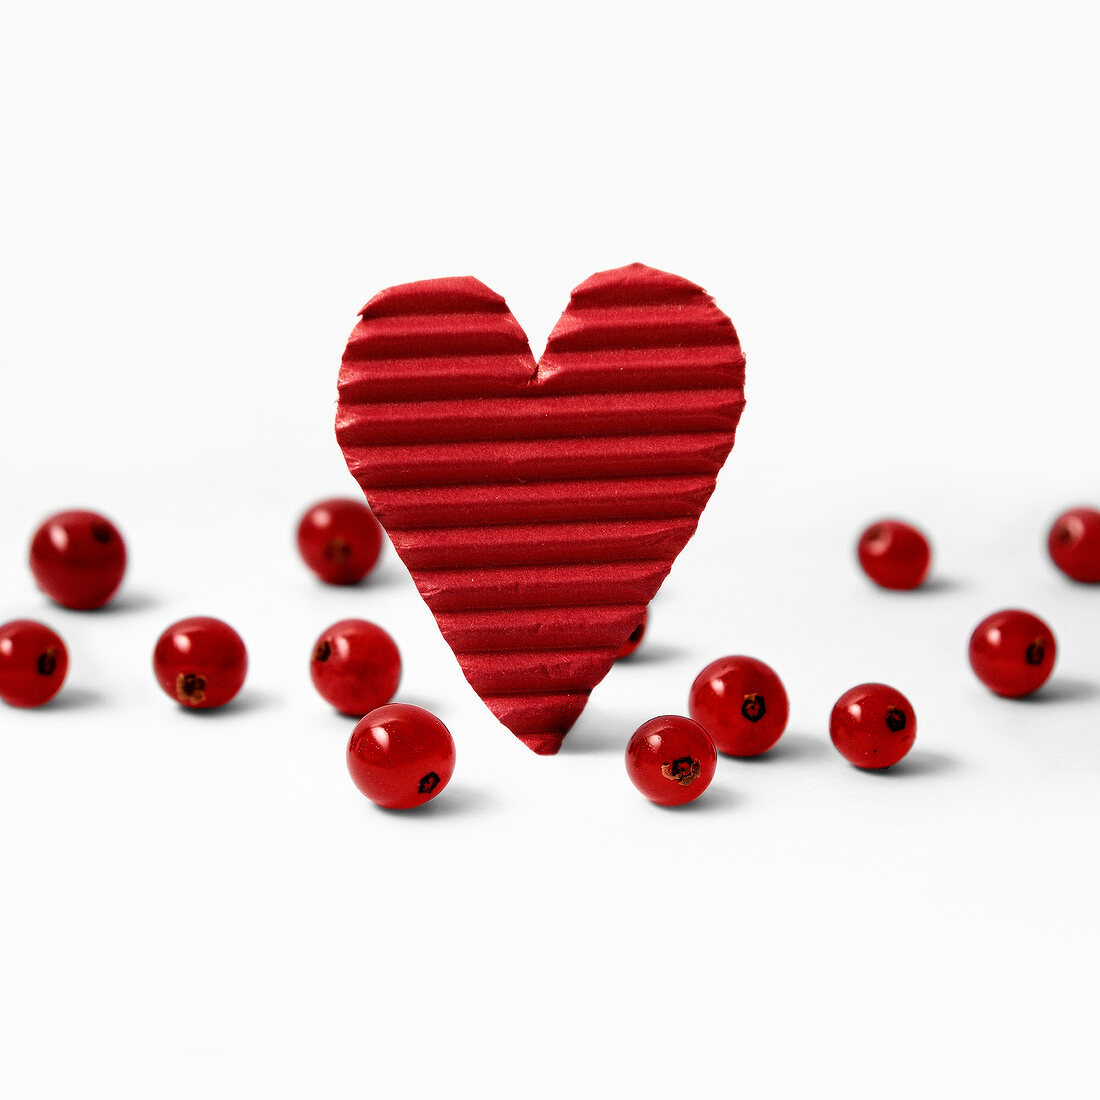 Herz aus rotem Karton und rote Johannisbeeren